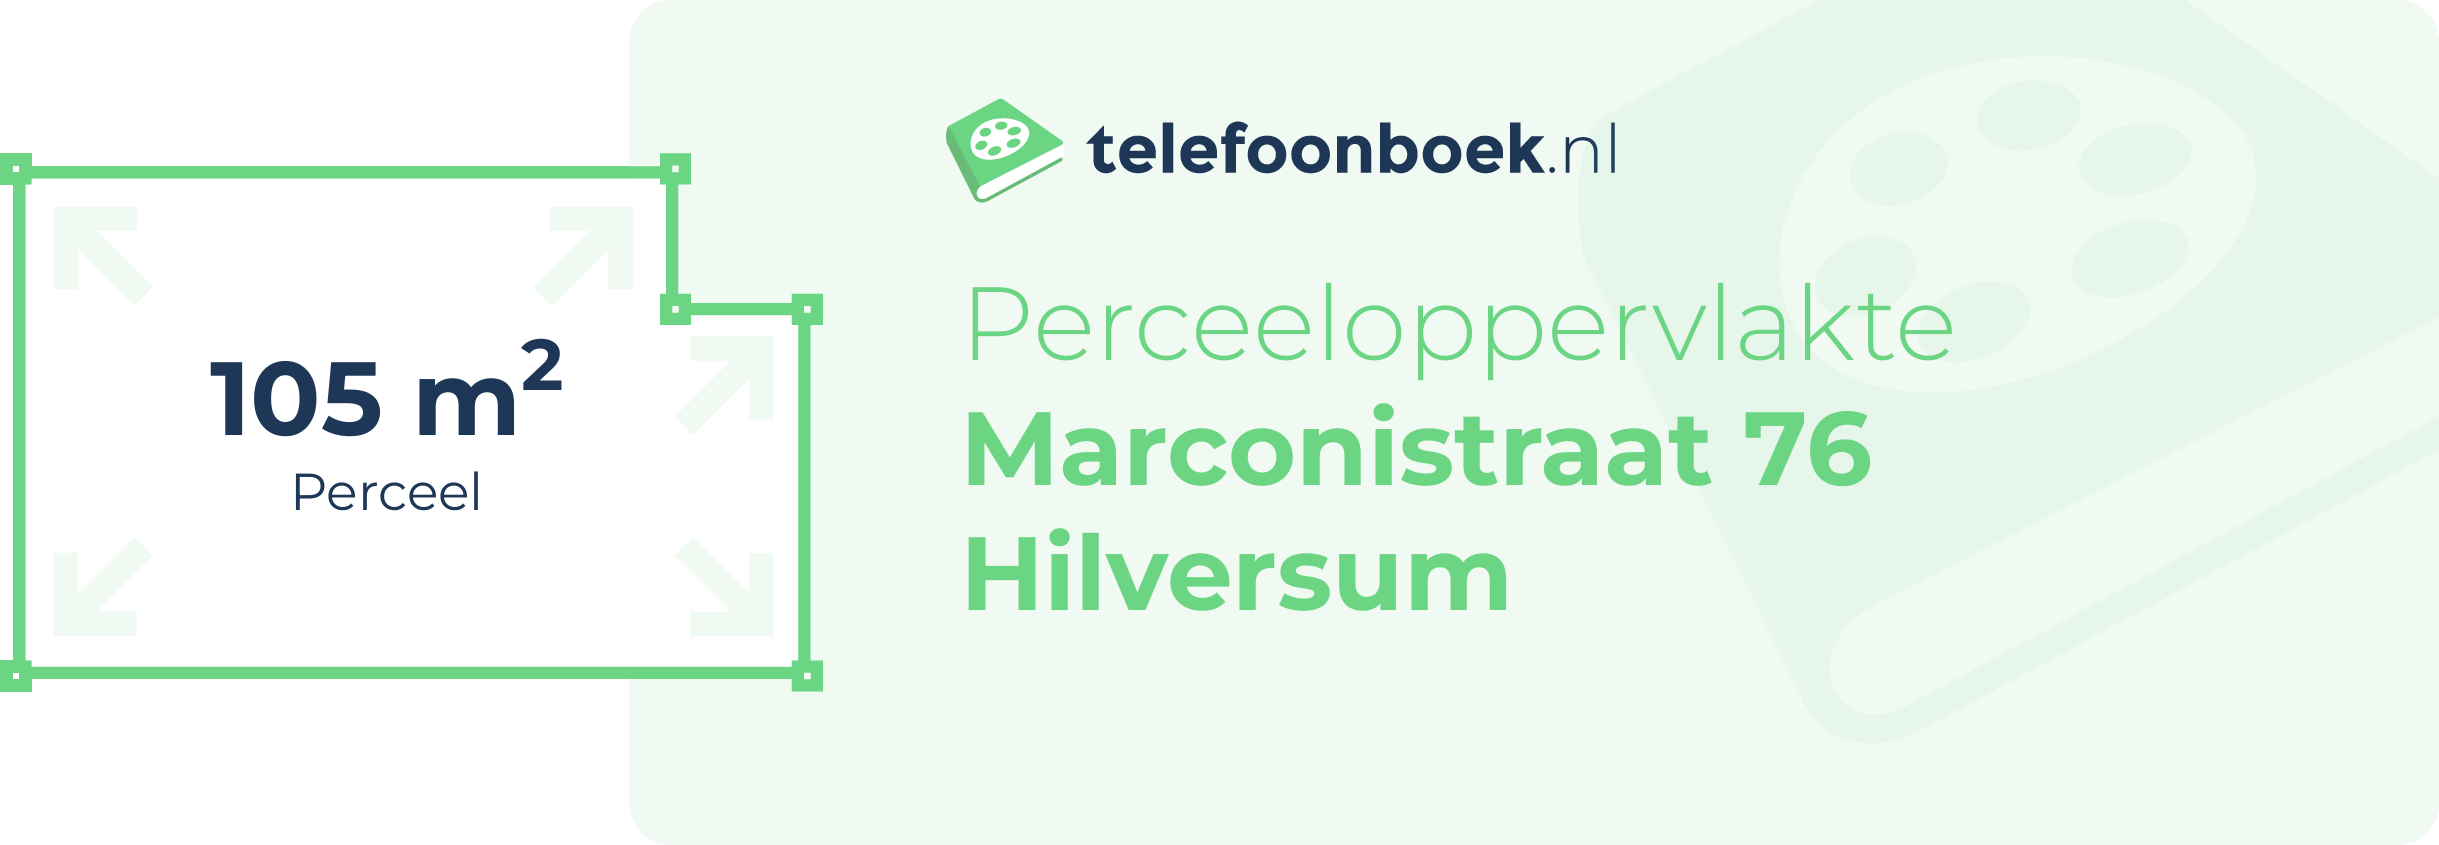 Perceeloppervlakte Marconistraat 76 Hilversum